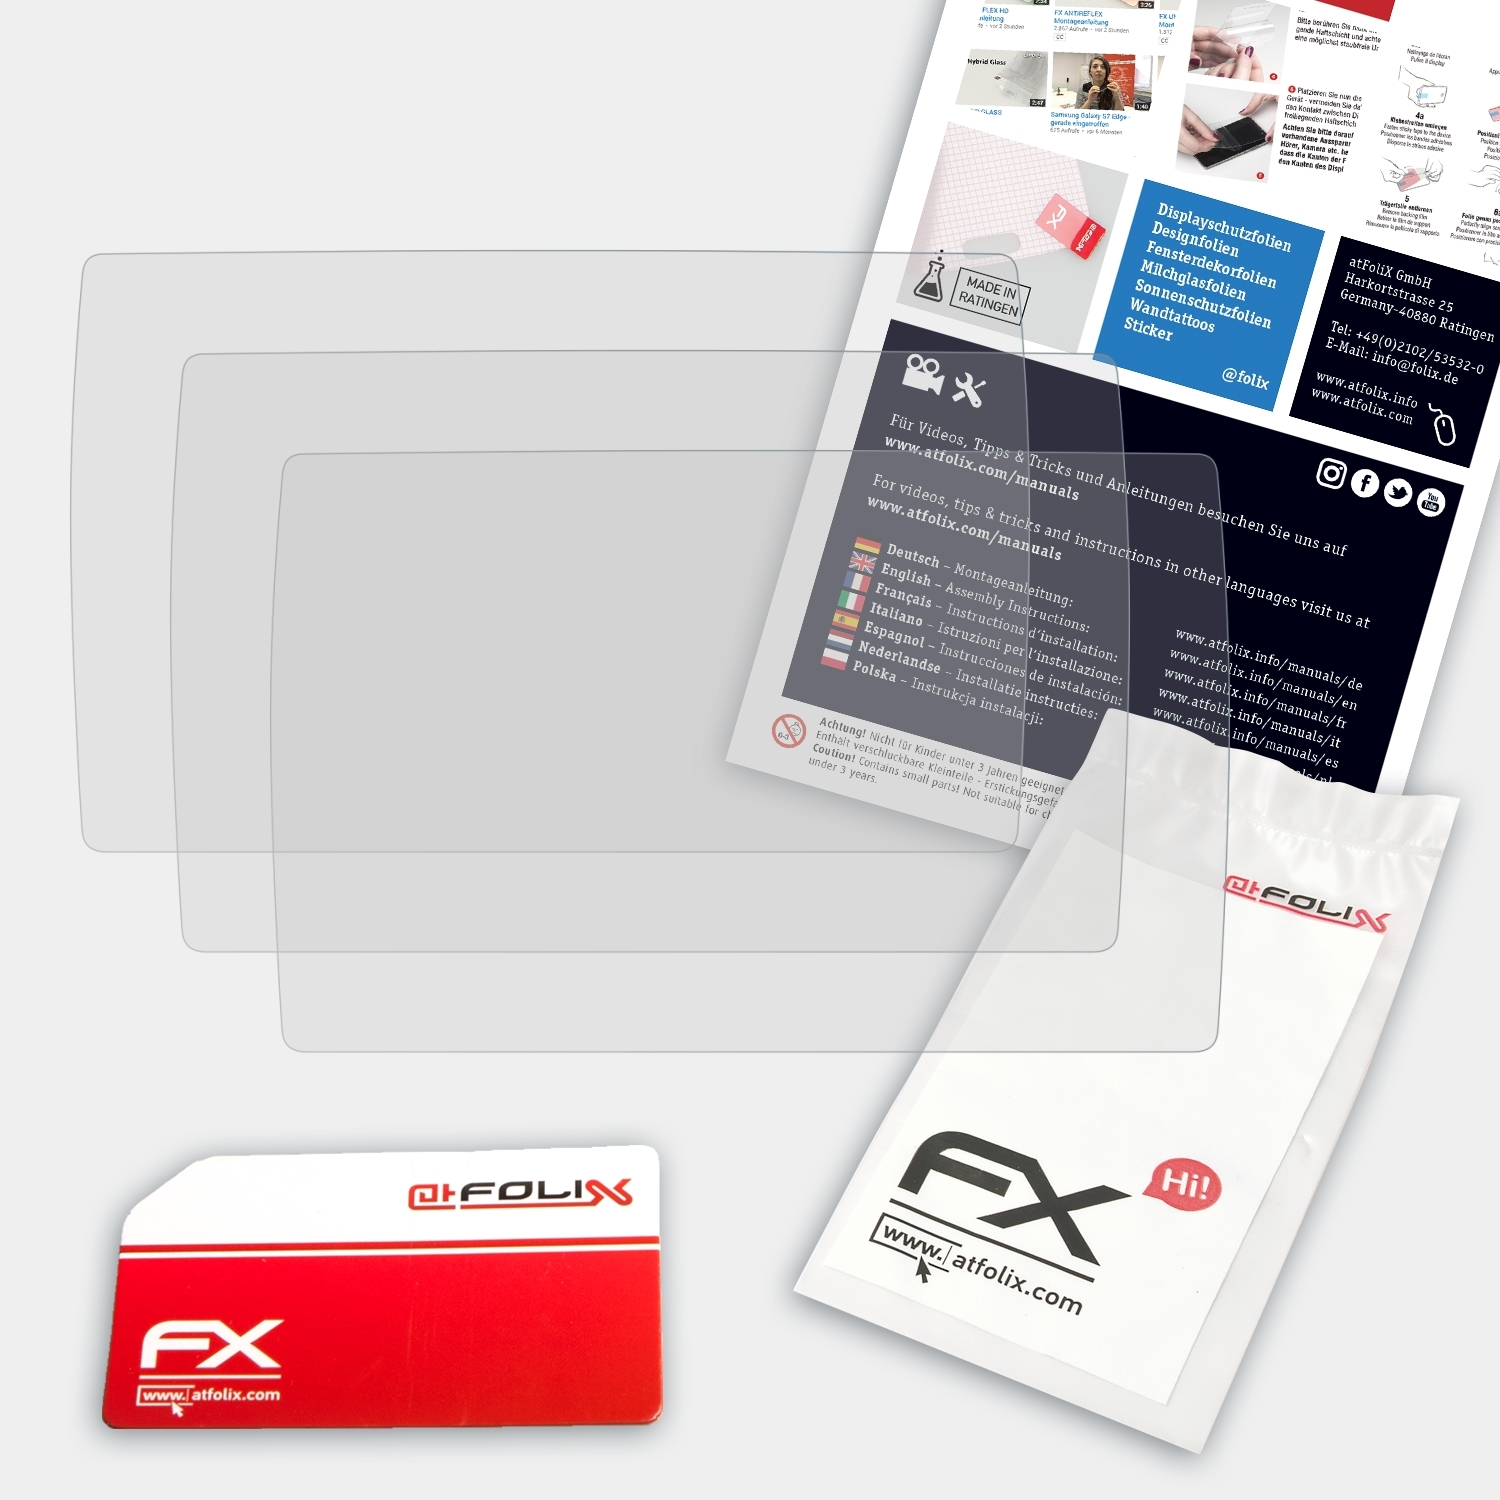 ATFOLIX 3x FX-Antireflex Displayschutz(für Yi 4K Plus)